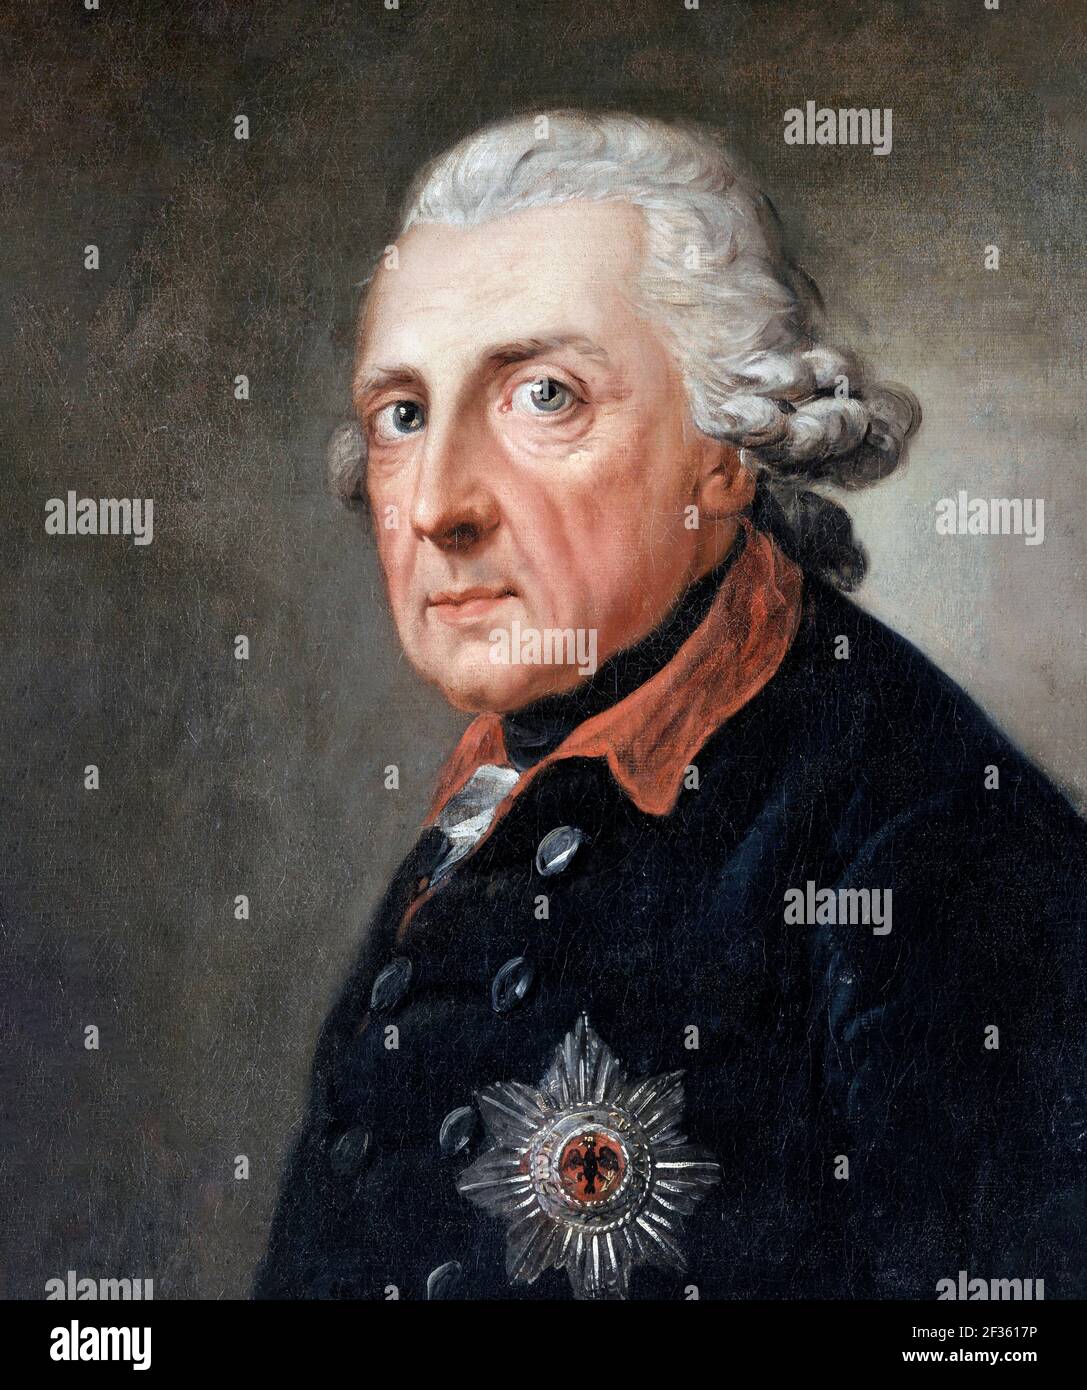 Federico il Grande. Ritratto di Federico II di Prussia (1712-1786) di Anton Graff, olio su tela, c.1781-86.. Federico II fu re di Prussia dal 1740 fino alla sua morte nel 1786 Foto Stock